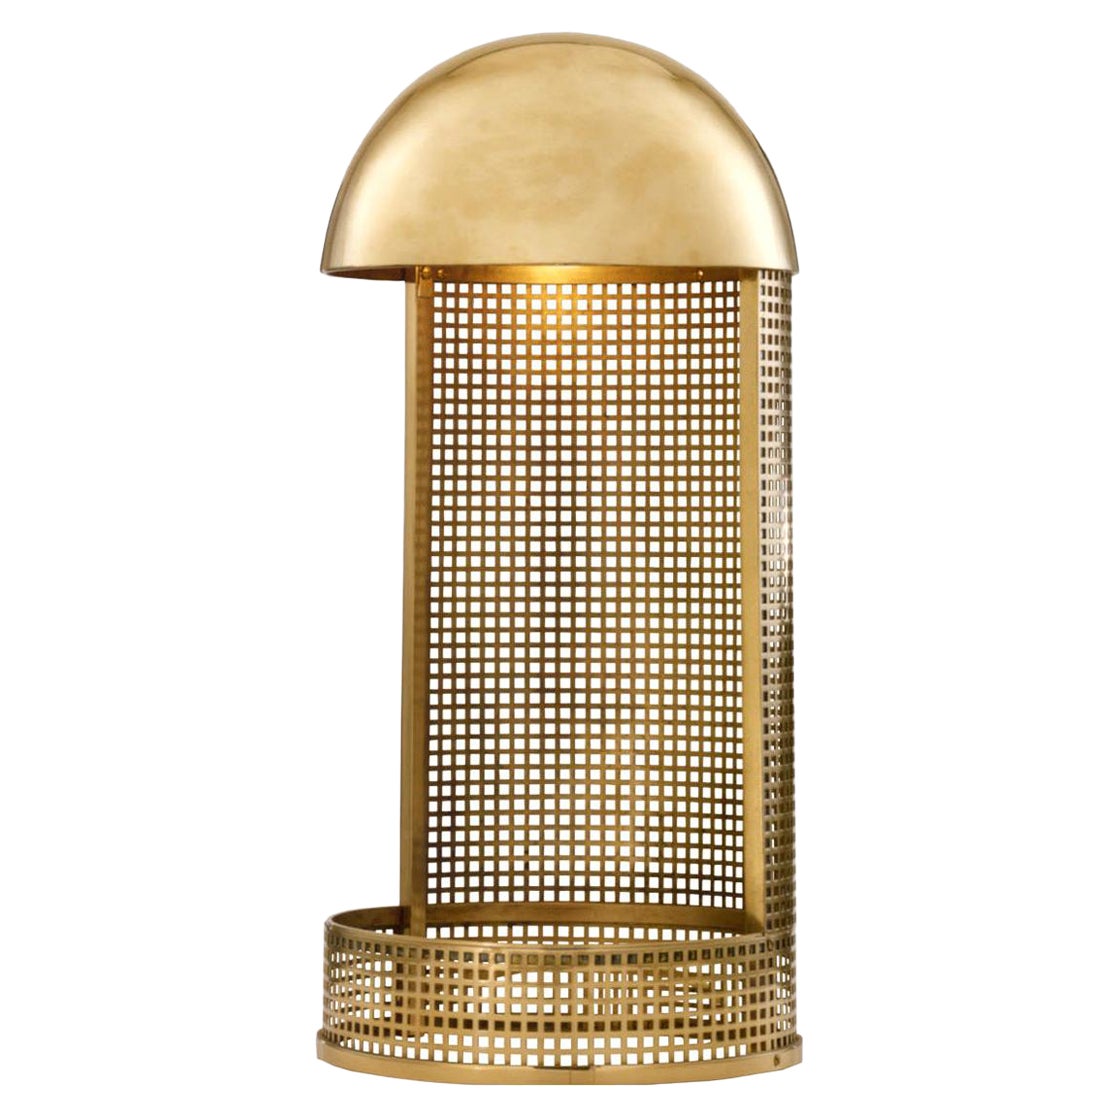 Koloman Moser/Wiener Werkstätte Brass Table Lamp, Re Edition